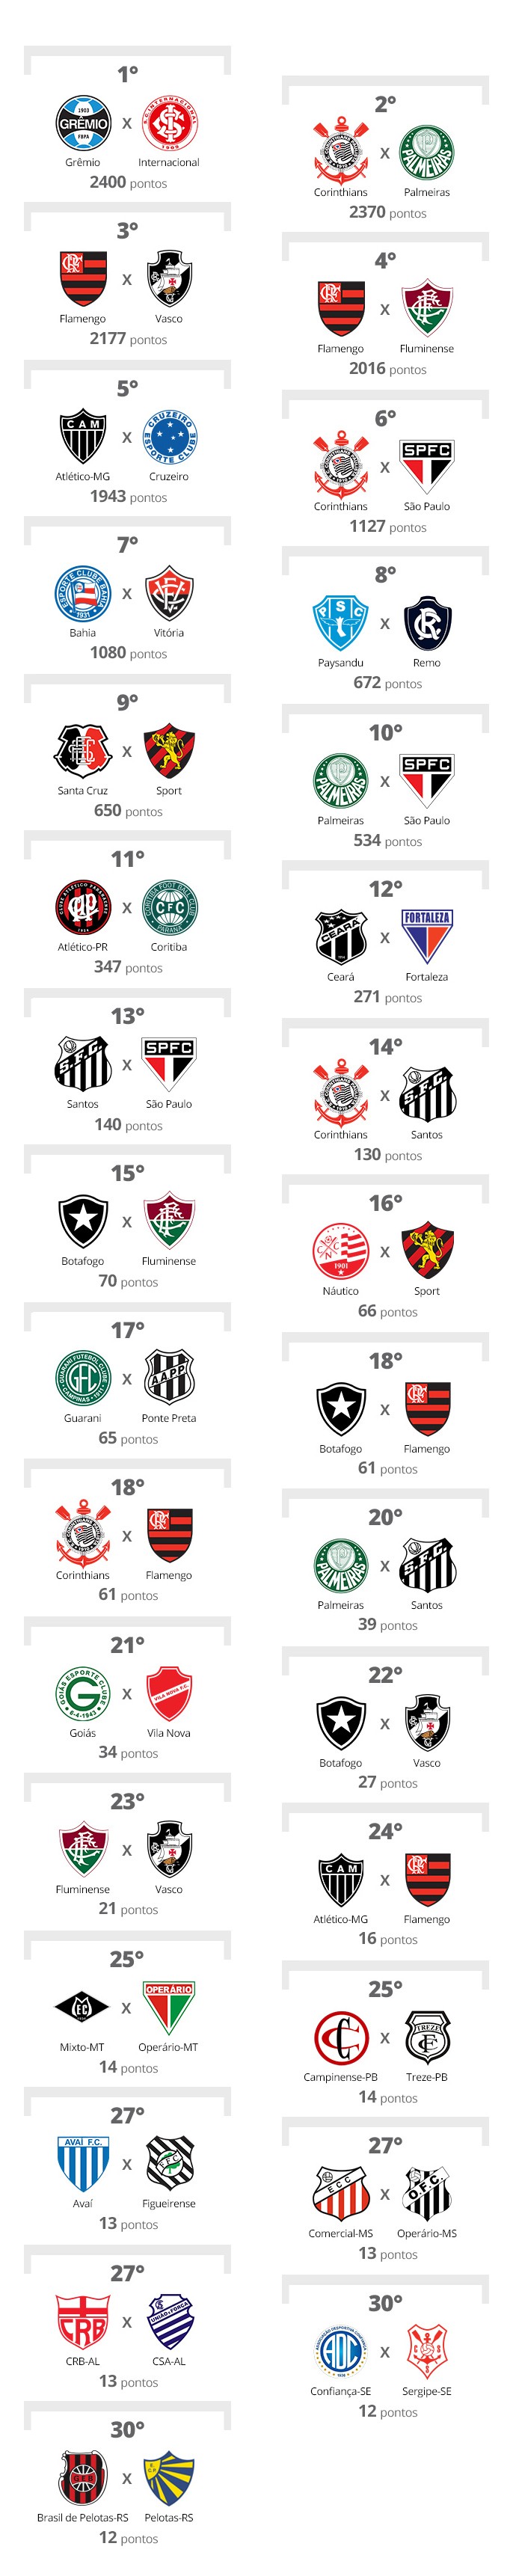 ¿Cuál es el Clásico de Flamengo